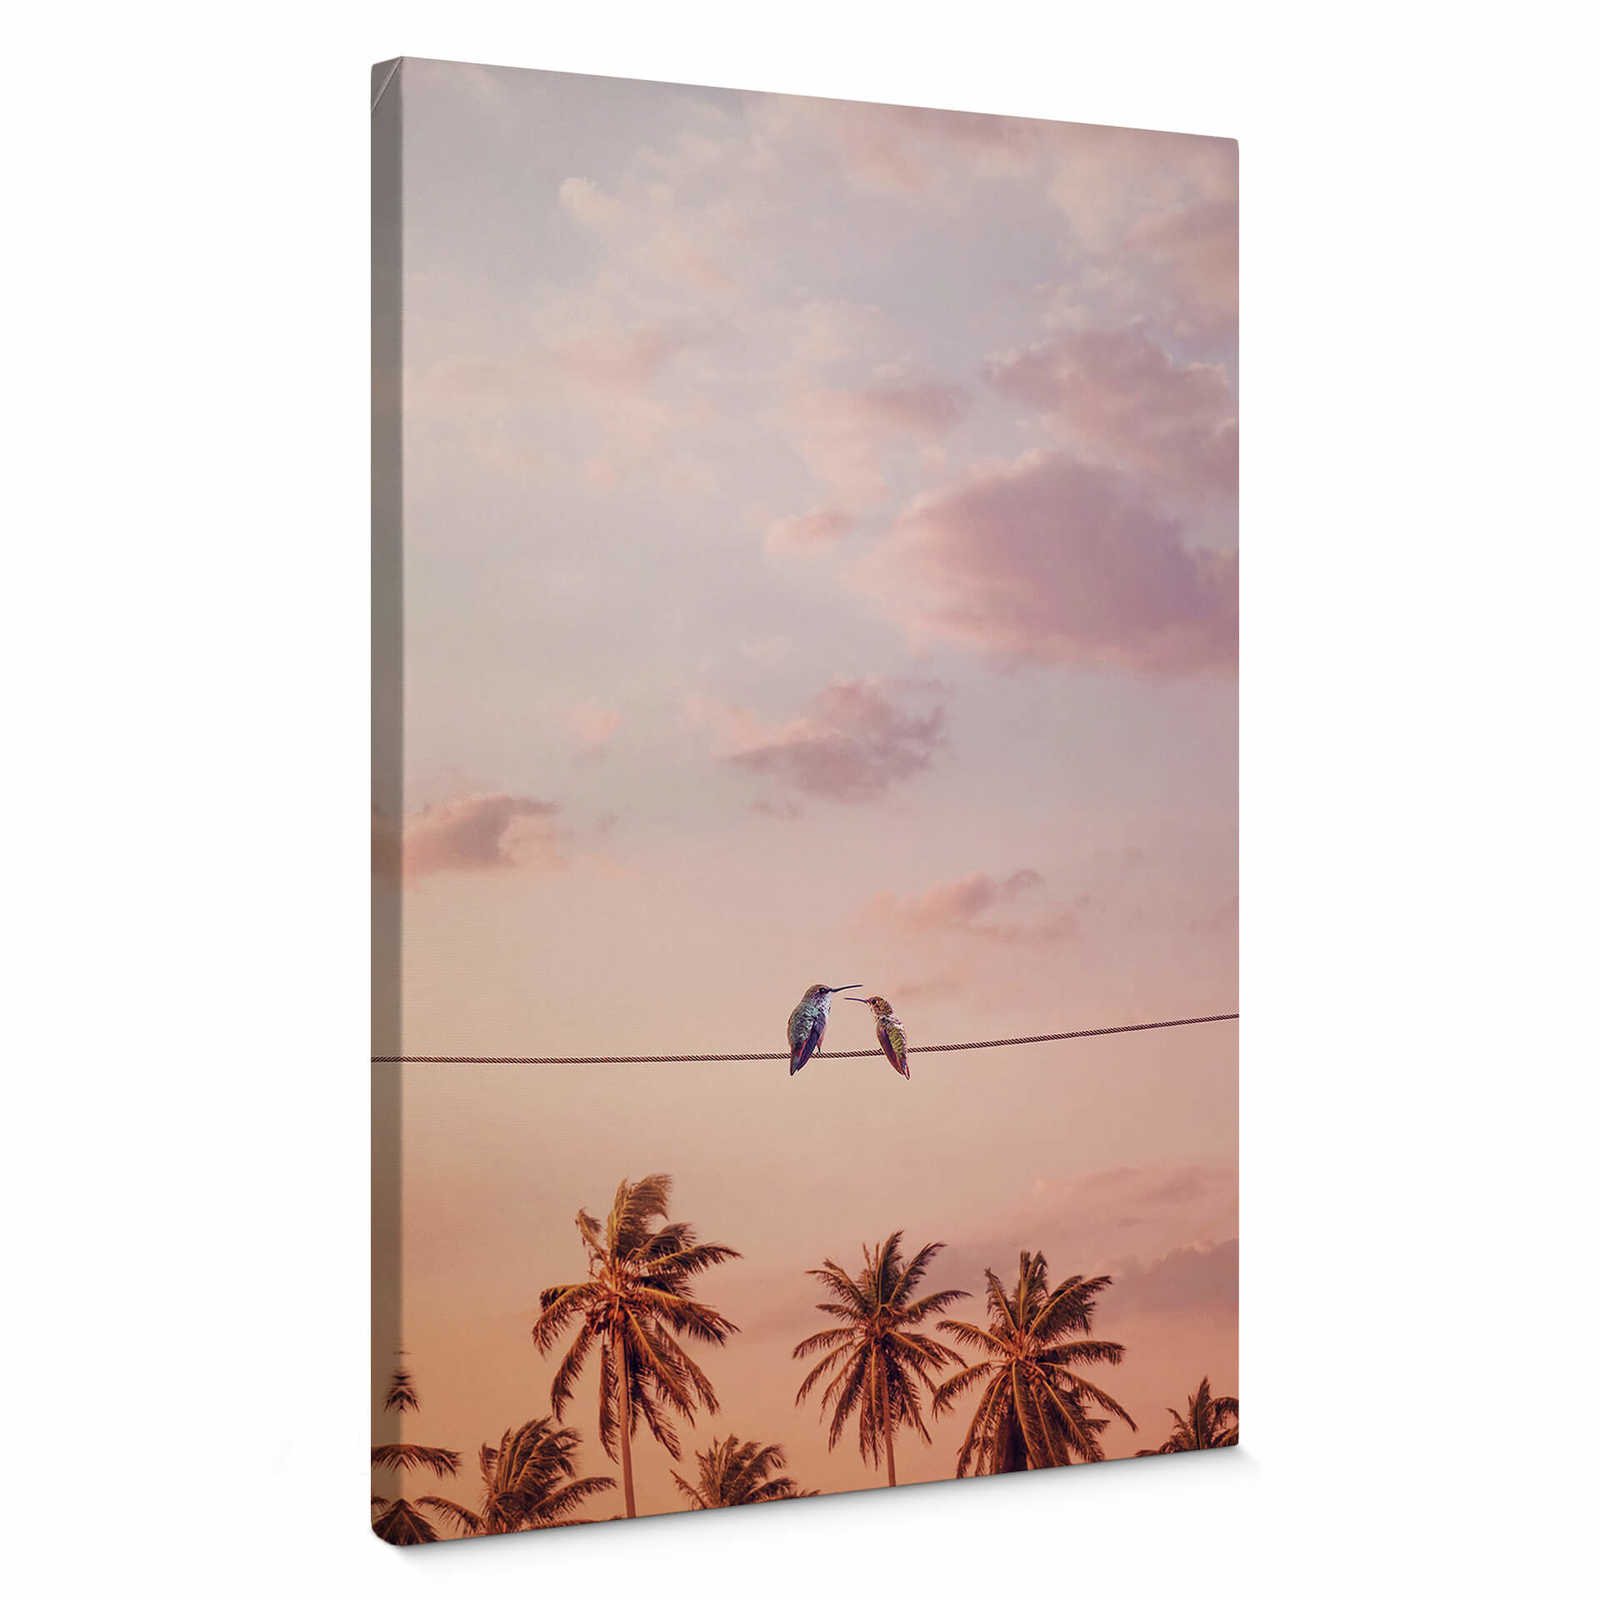 Leinwandbild "Verliebte Kolibris" von Loose - Rosa – 0,50 m x 0,70 m
